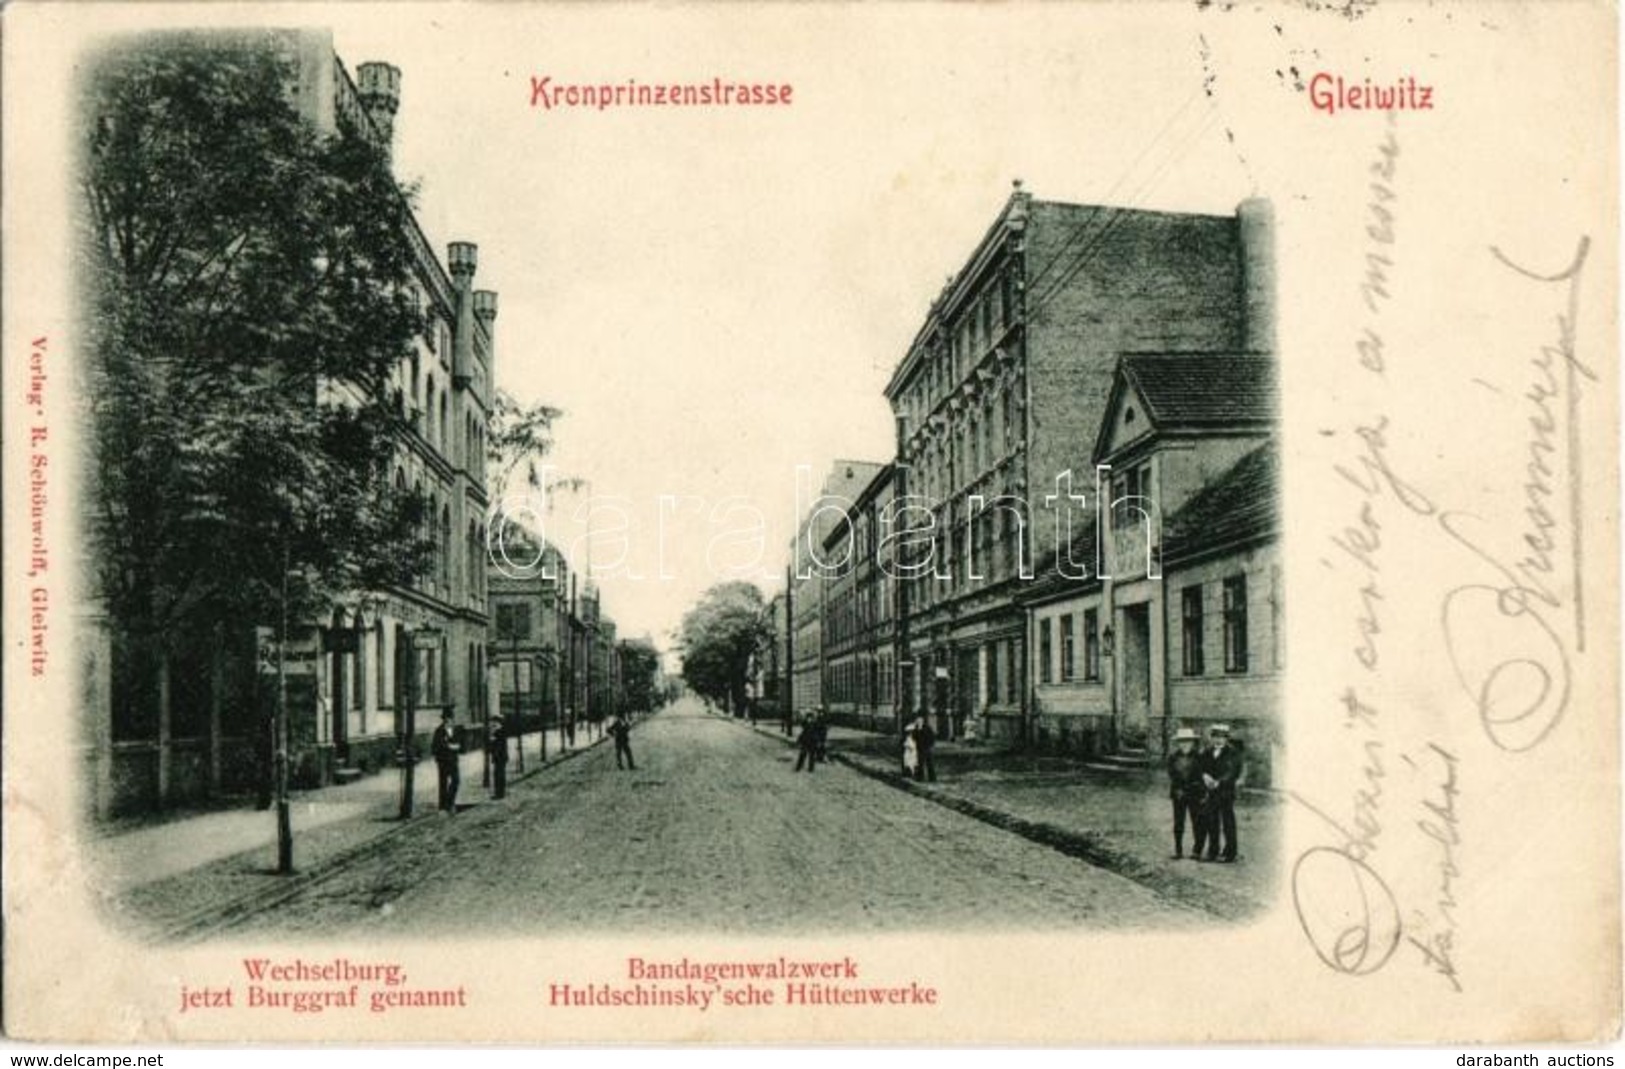 T2 1900 Gliwice, Gleiwitz; Kronprinzstrasse, Wechselburg (jetzt Burggraf Genannt), Bandagenwalzwerk Huldschinsky'sche Hü - Ohne Zuordnung